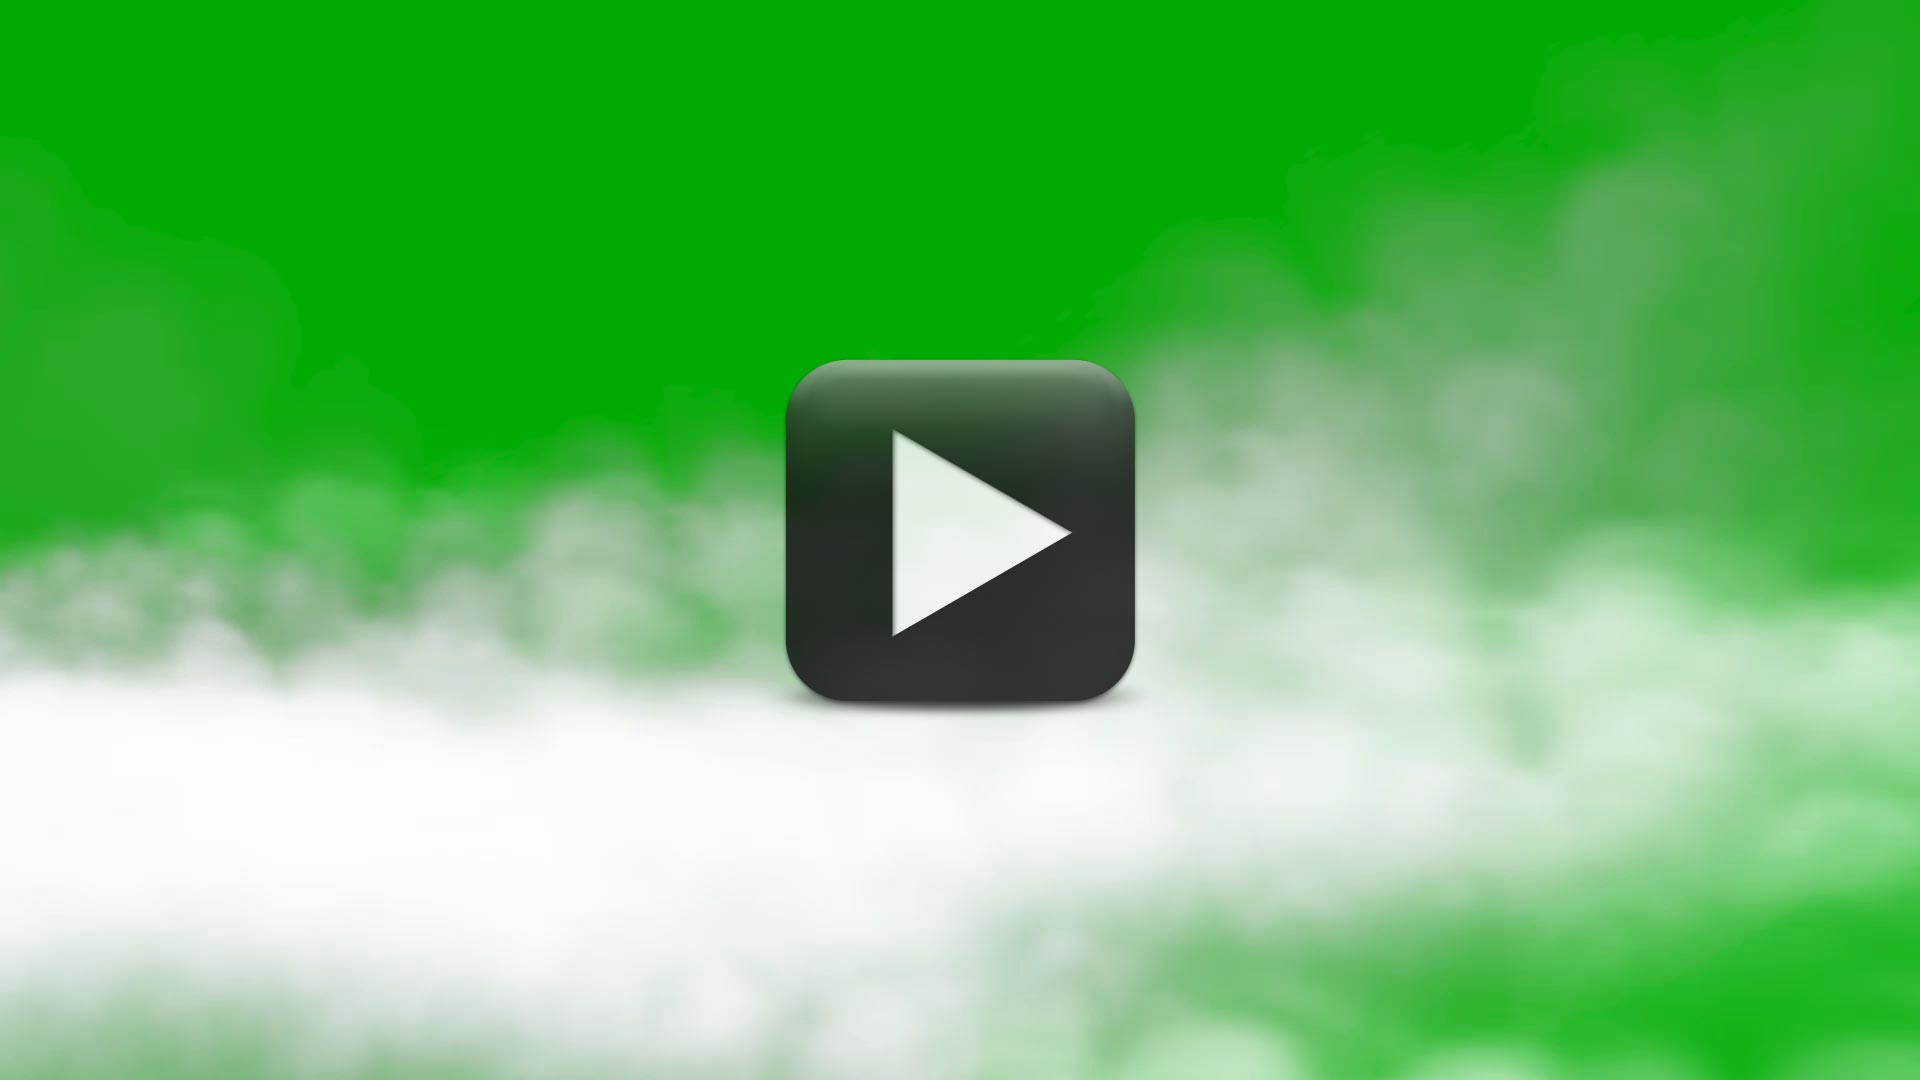 Hãy xem hình ảnh nền màn hình xanh lá cây để tạo không gian hoàn hảo cho video của bạn!